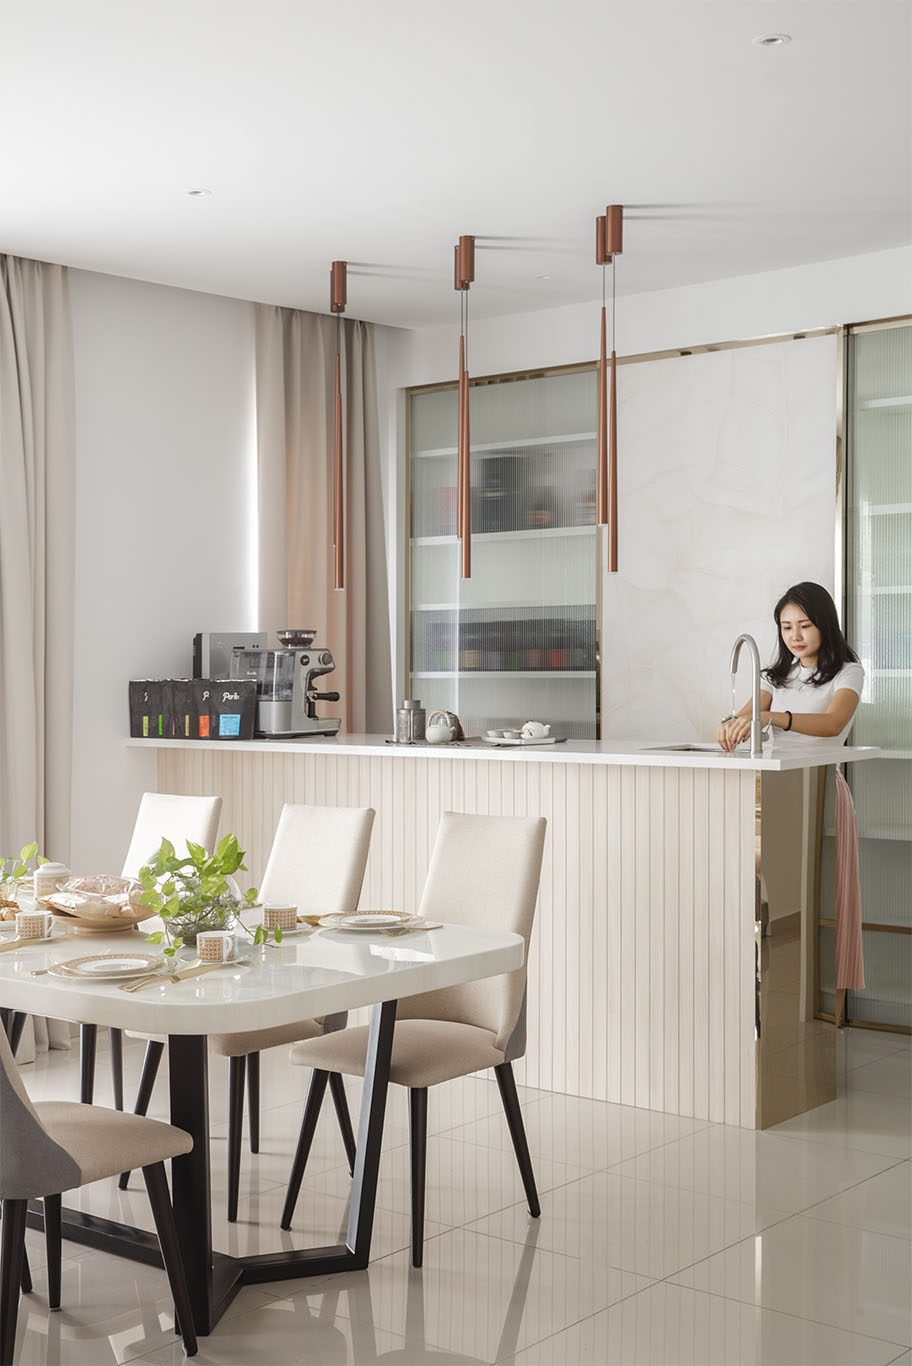 Grande Rhapsody earth color themed open kitchen interior design